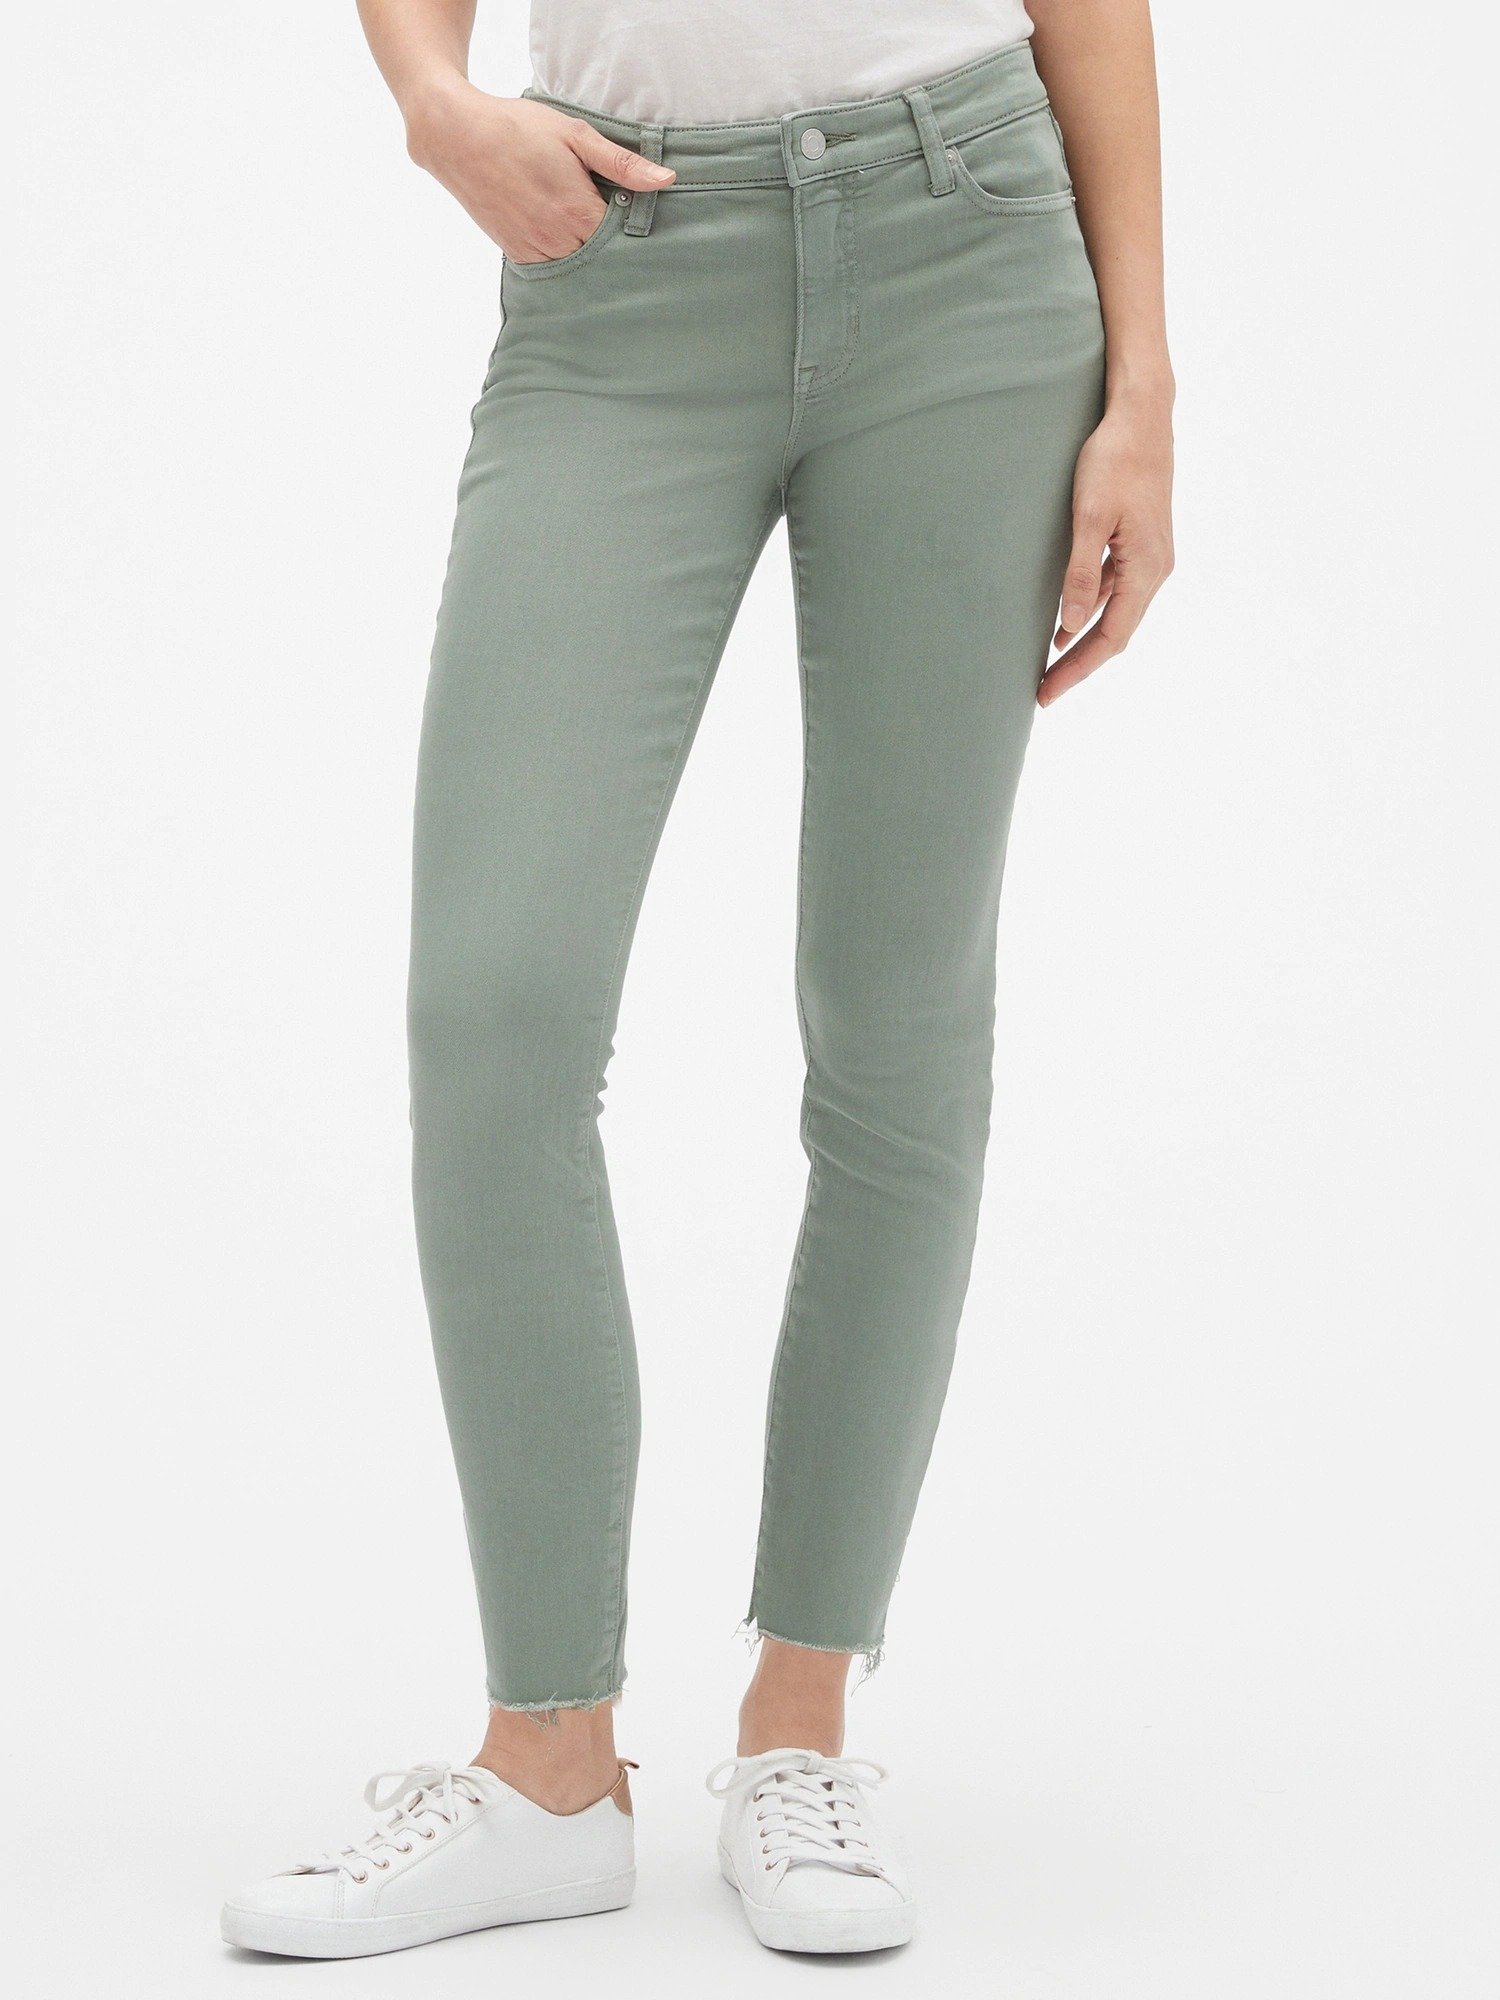 Orta Belli Super Skinny Jean Pantolon product image